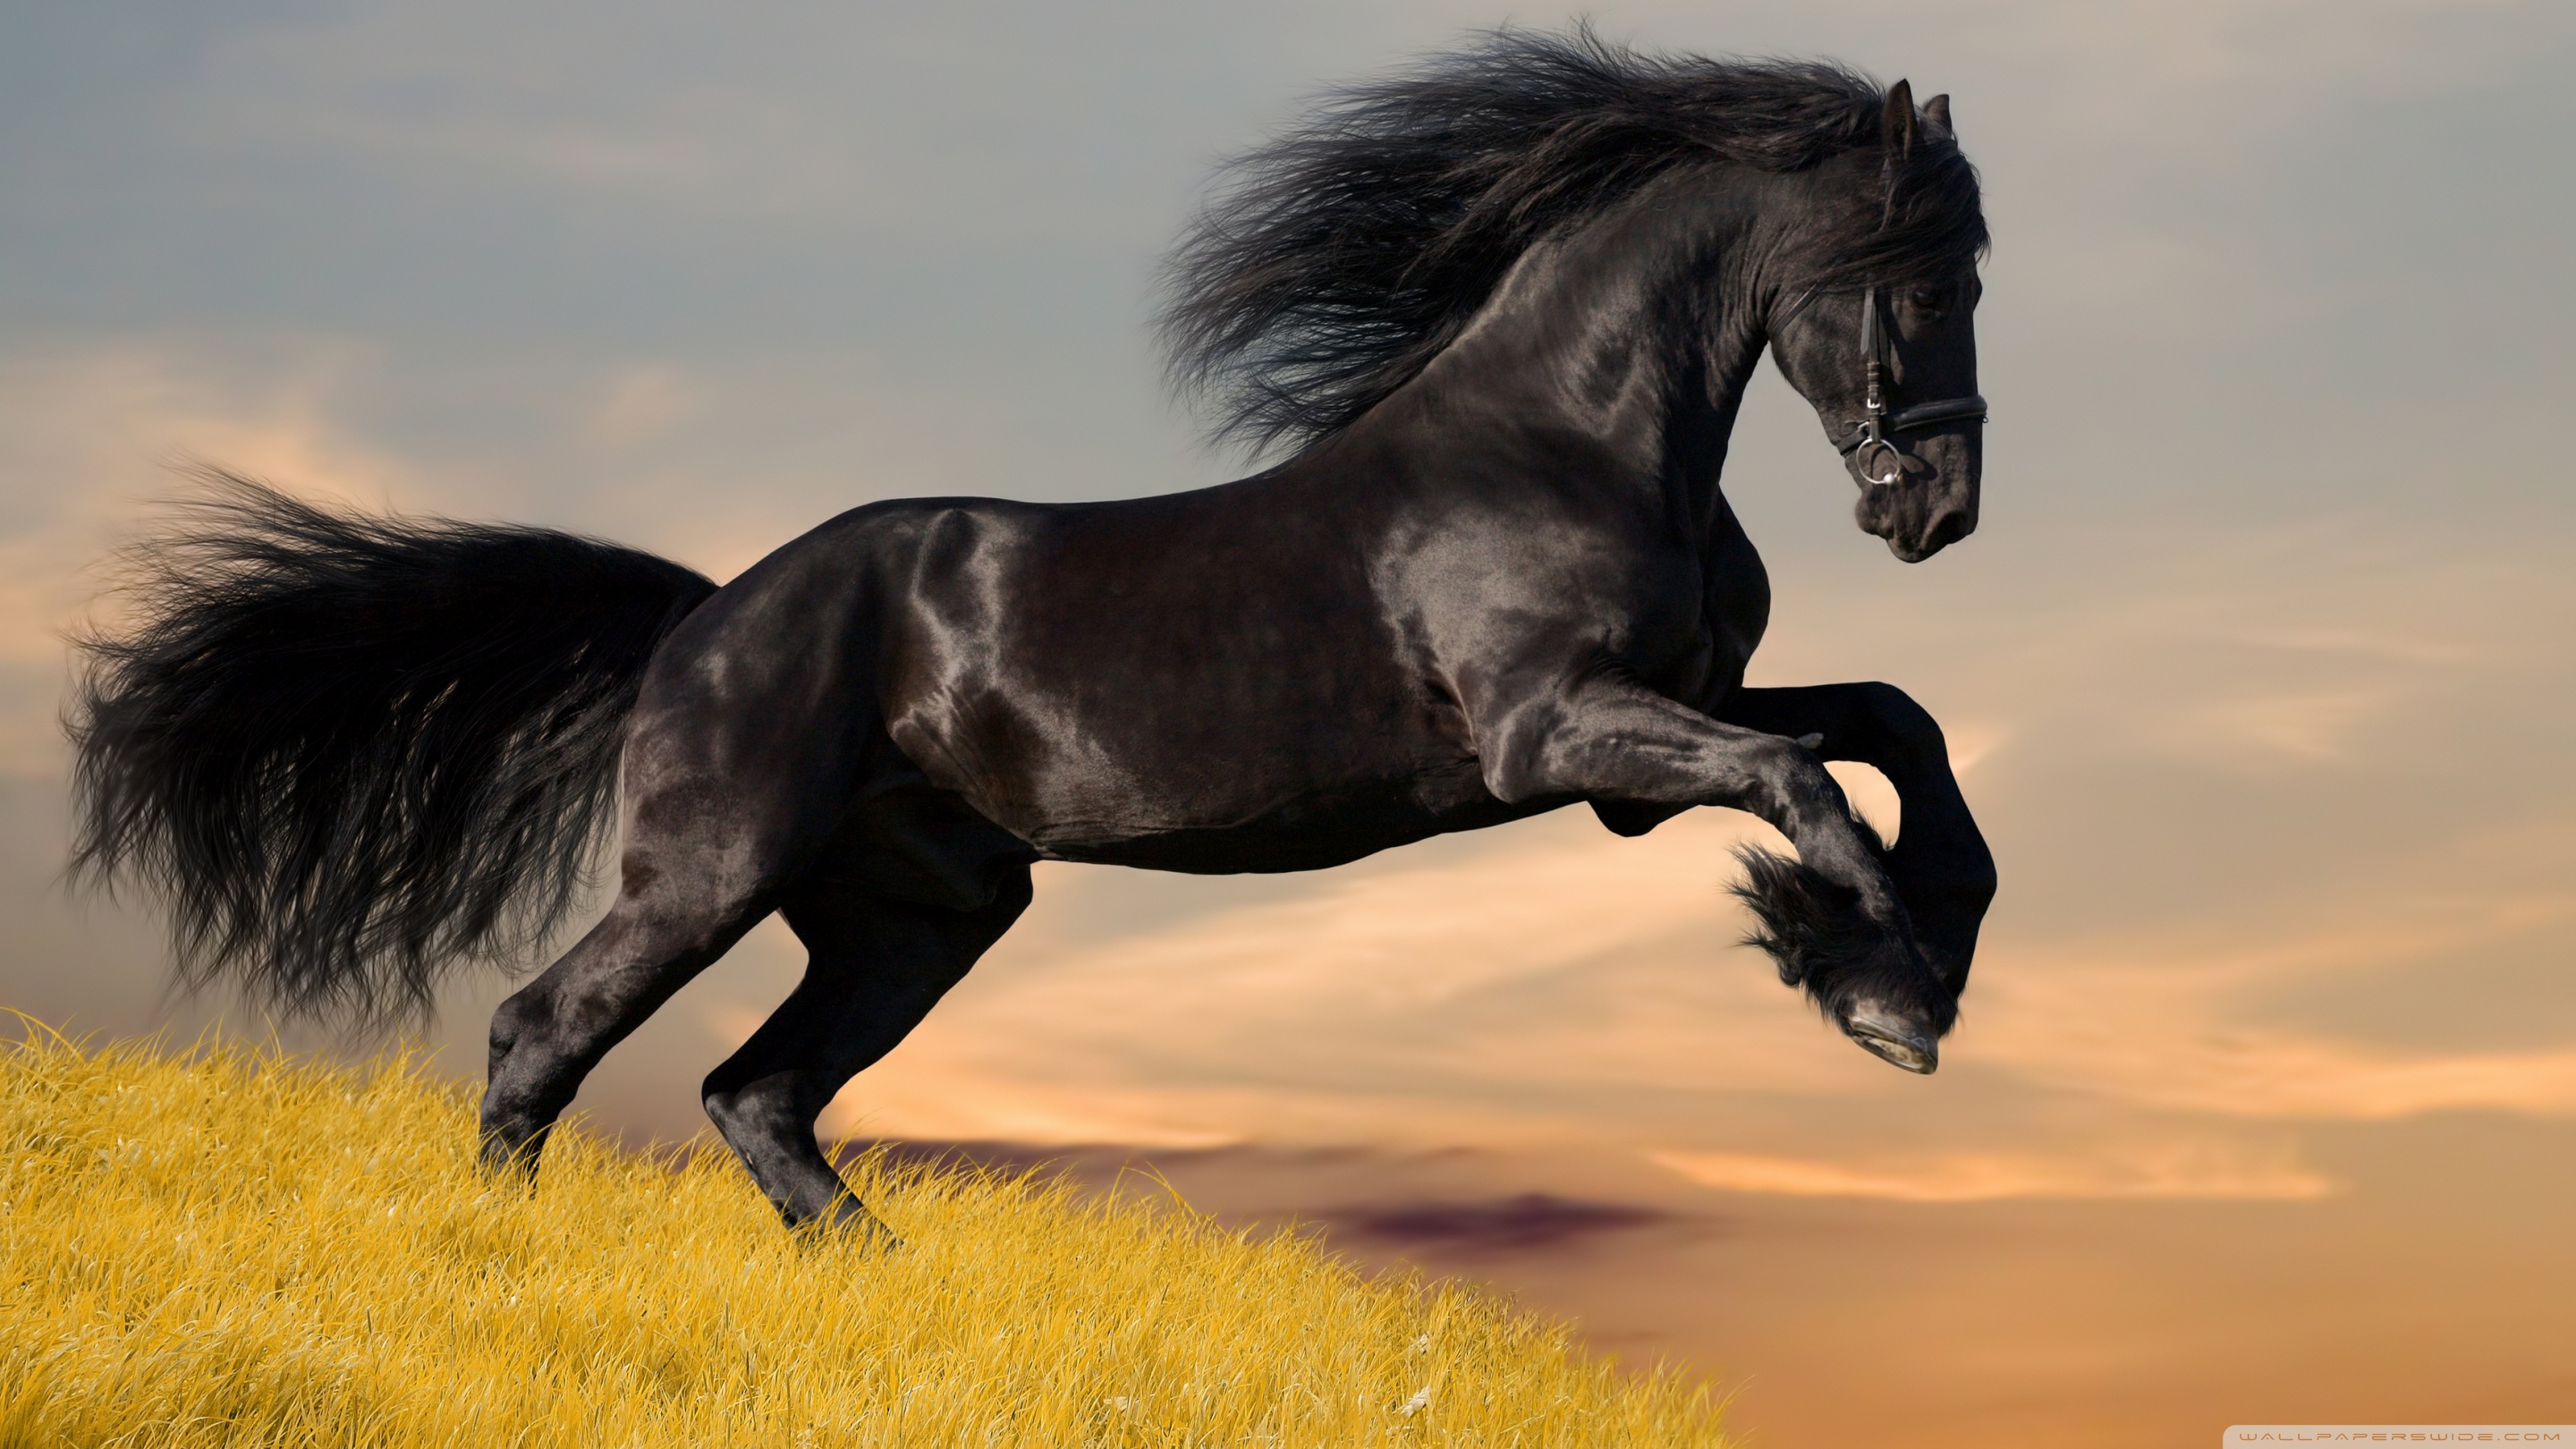 Standard - Horse Hd , HD Wallpaper & Backgrounds